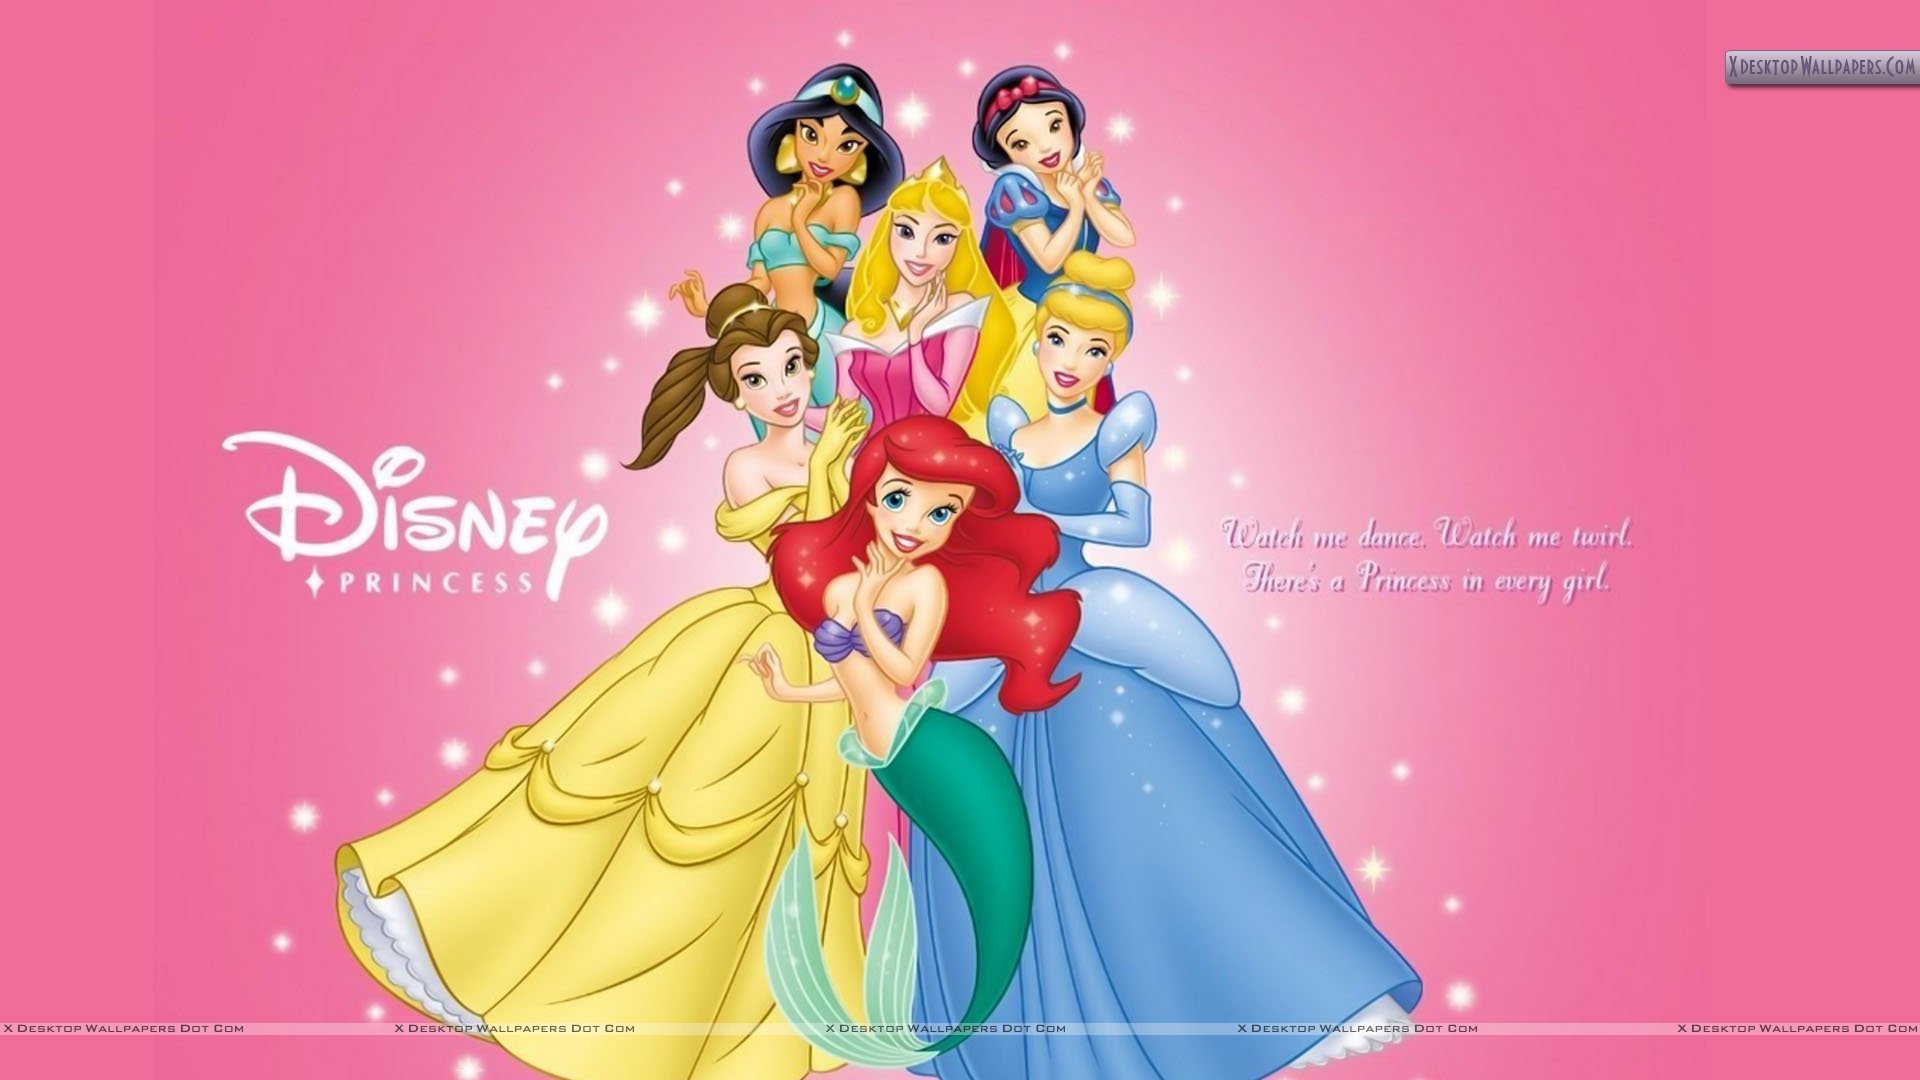 Disney Princess Widescreen Wallpaper High Resolution Wallpaper Full